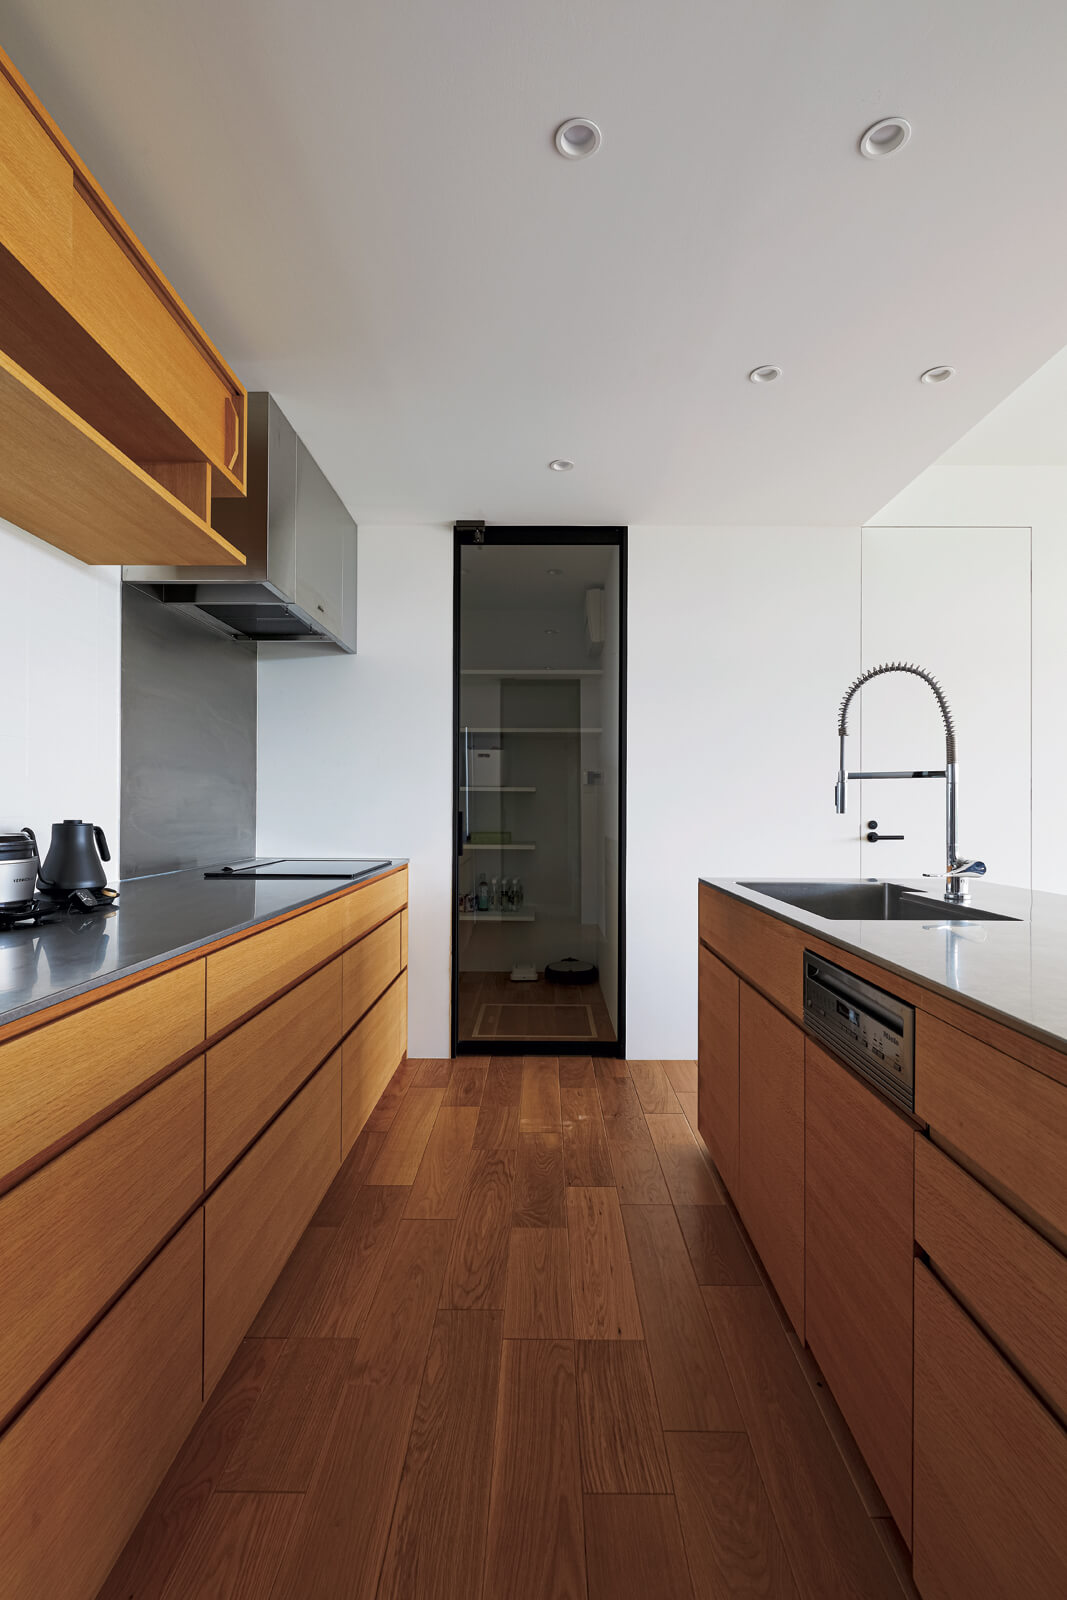 造作キッチンは機能的なセパレートタイプを採用。奥の扉はパントリーに通じる